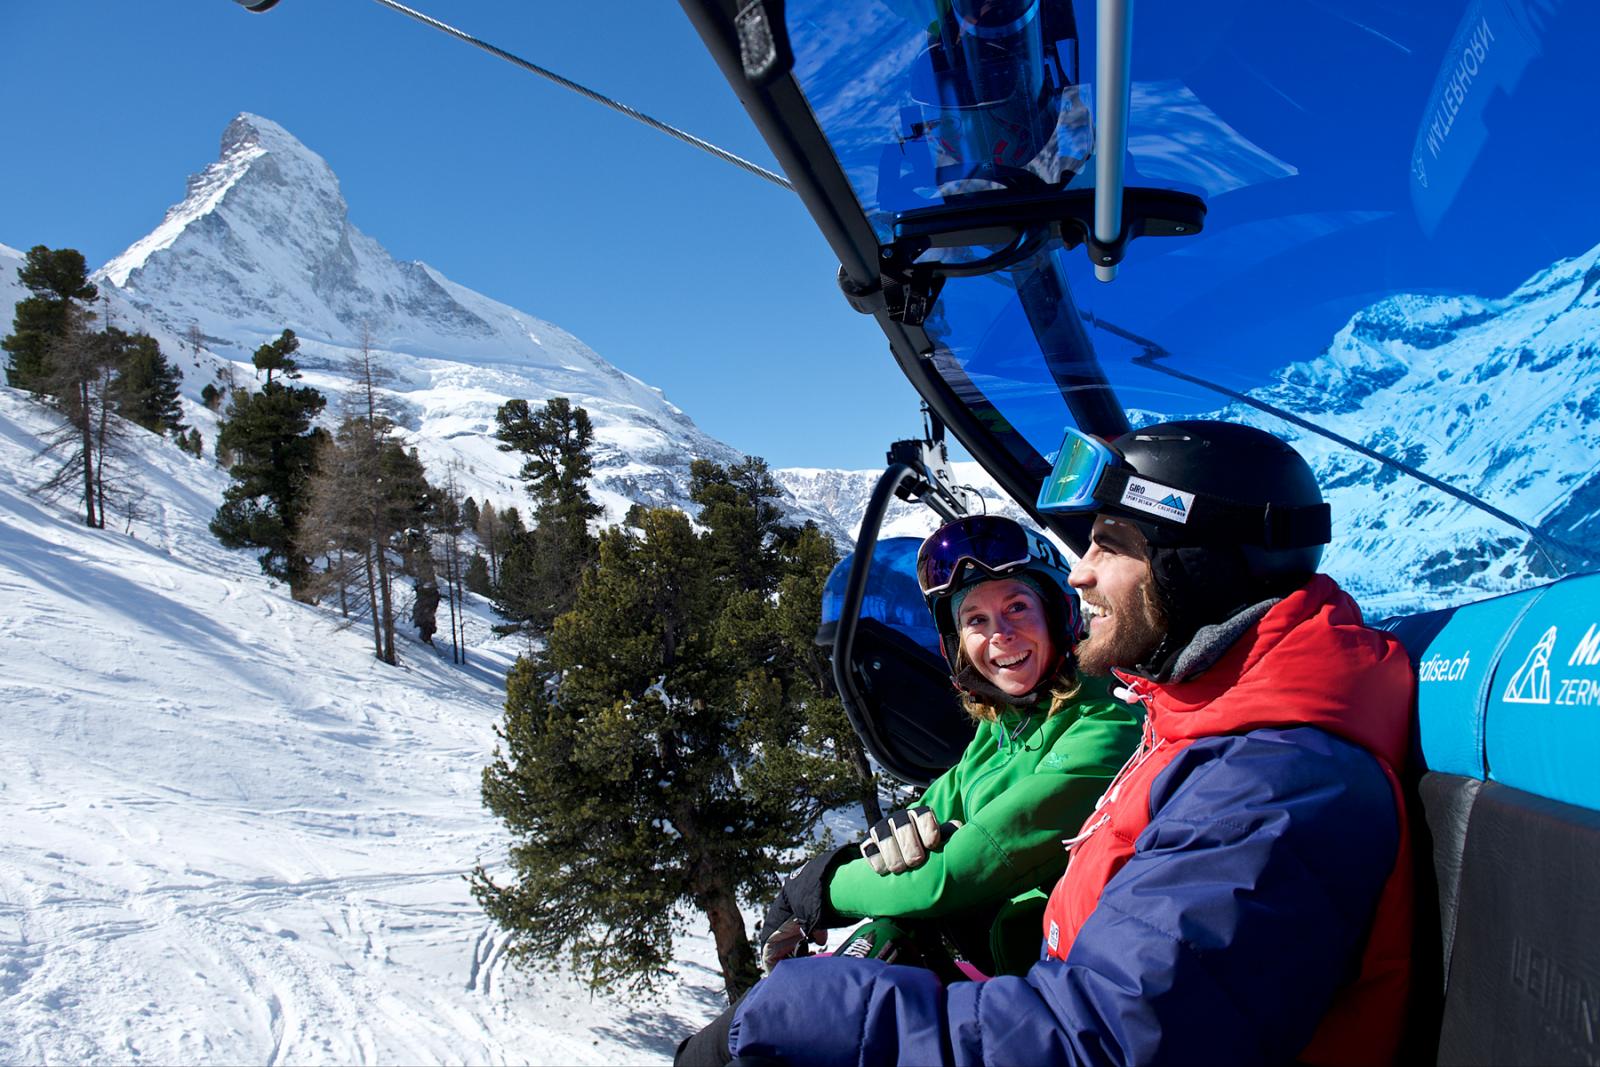 Vooruitzicht wintersportseizoen 2018/19 in Zermatt, Zwitserland